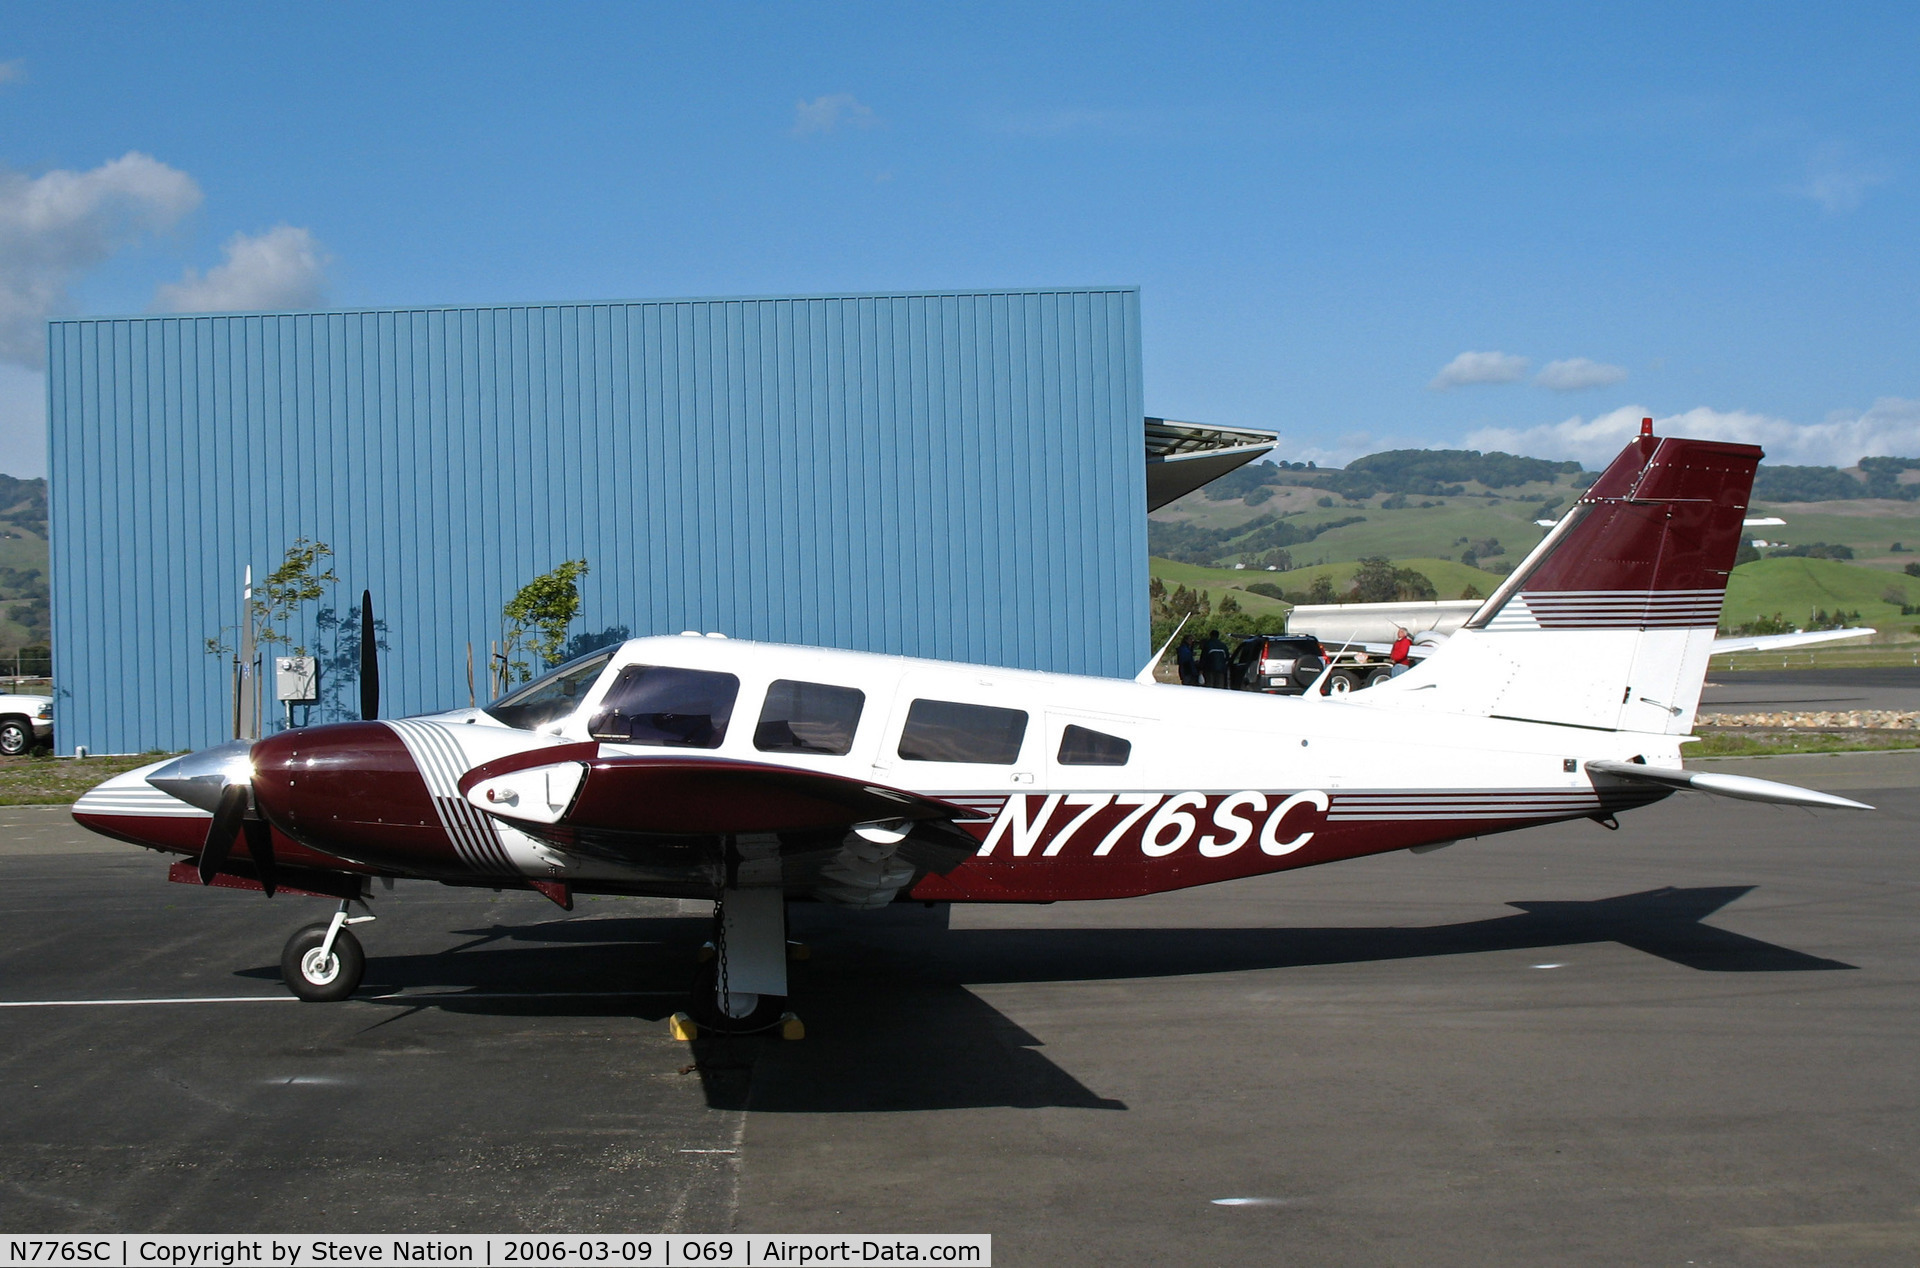 N776SC, 1981 Piper PA-34-200T C/N 34-8170026, 1981 Piper PA-34-200T @ Petaluma, CA home base